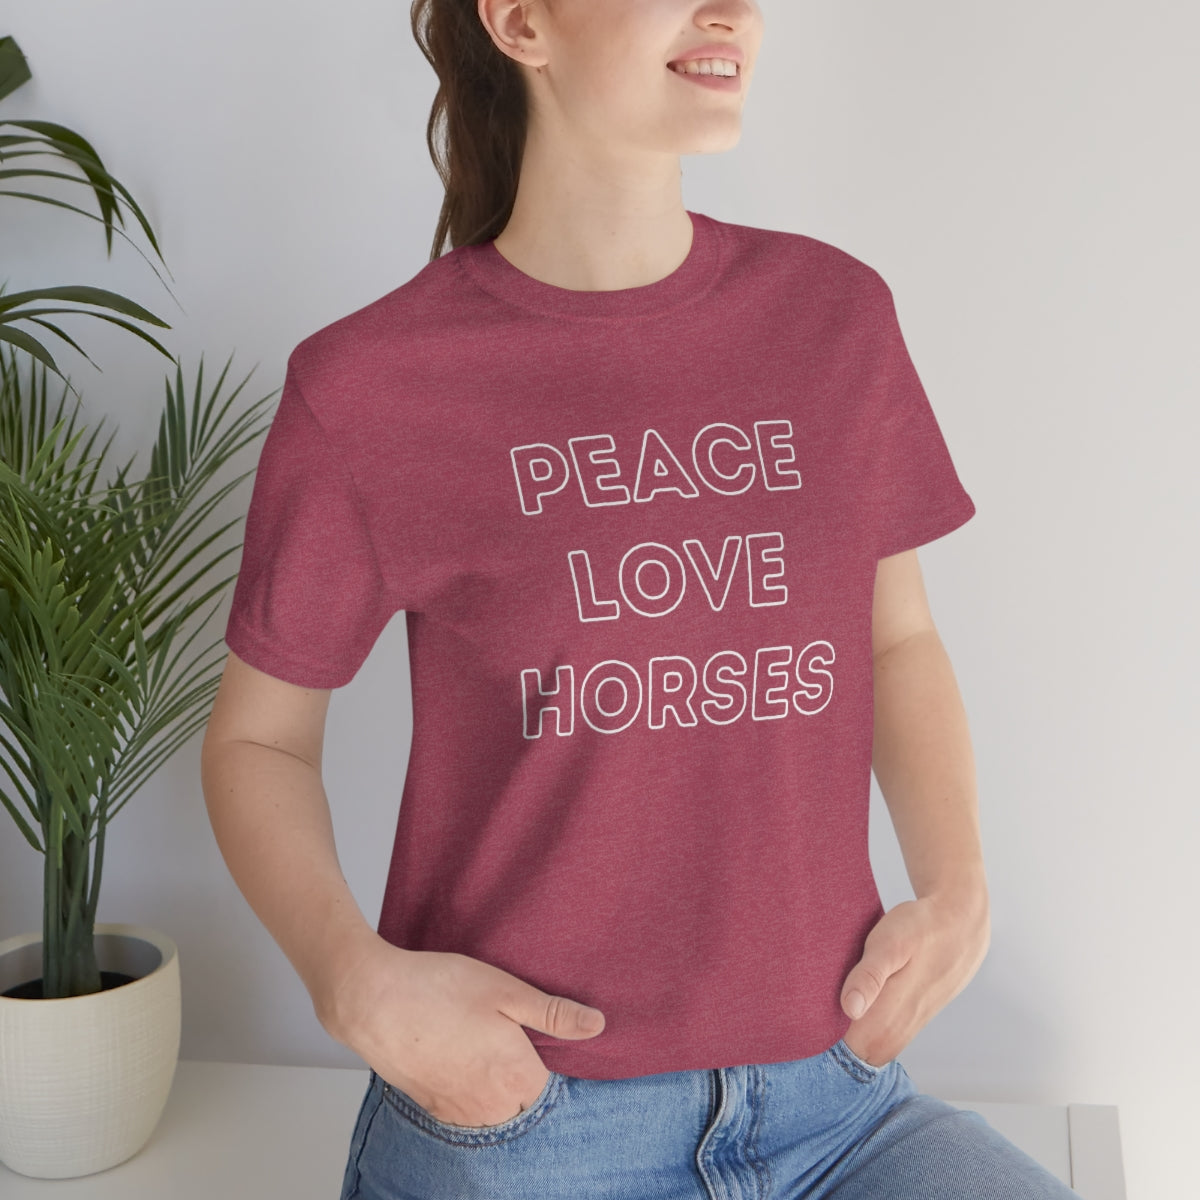 PEACE LOVE HORSES